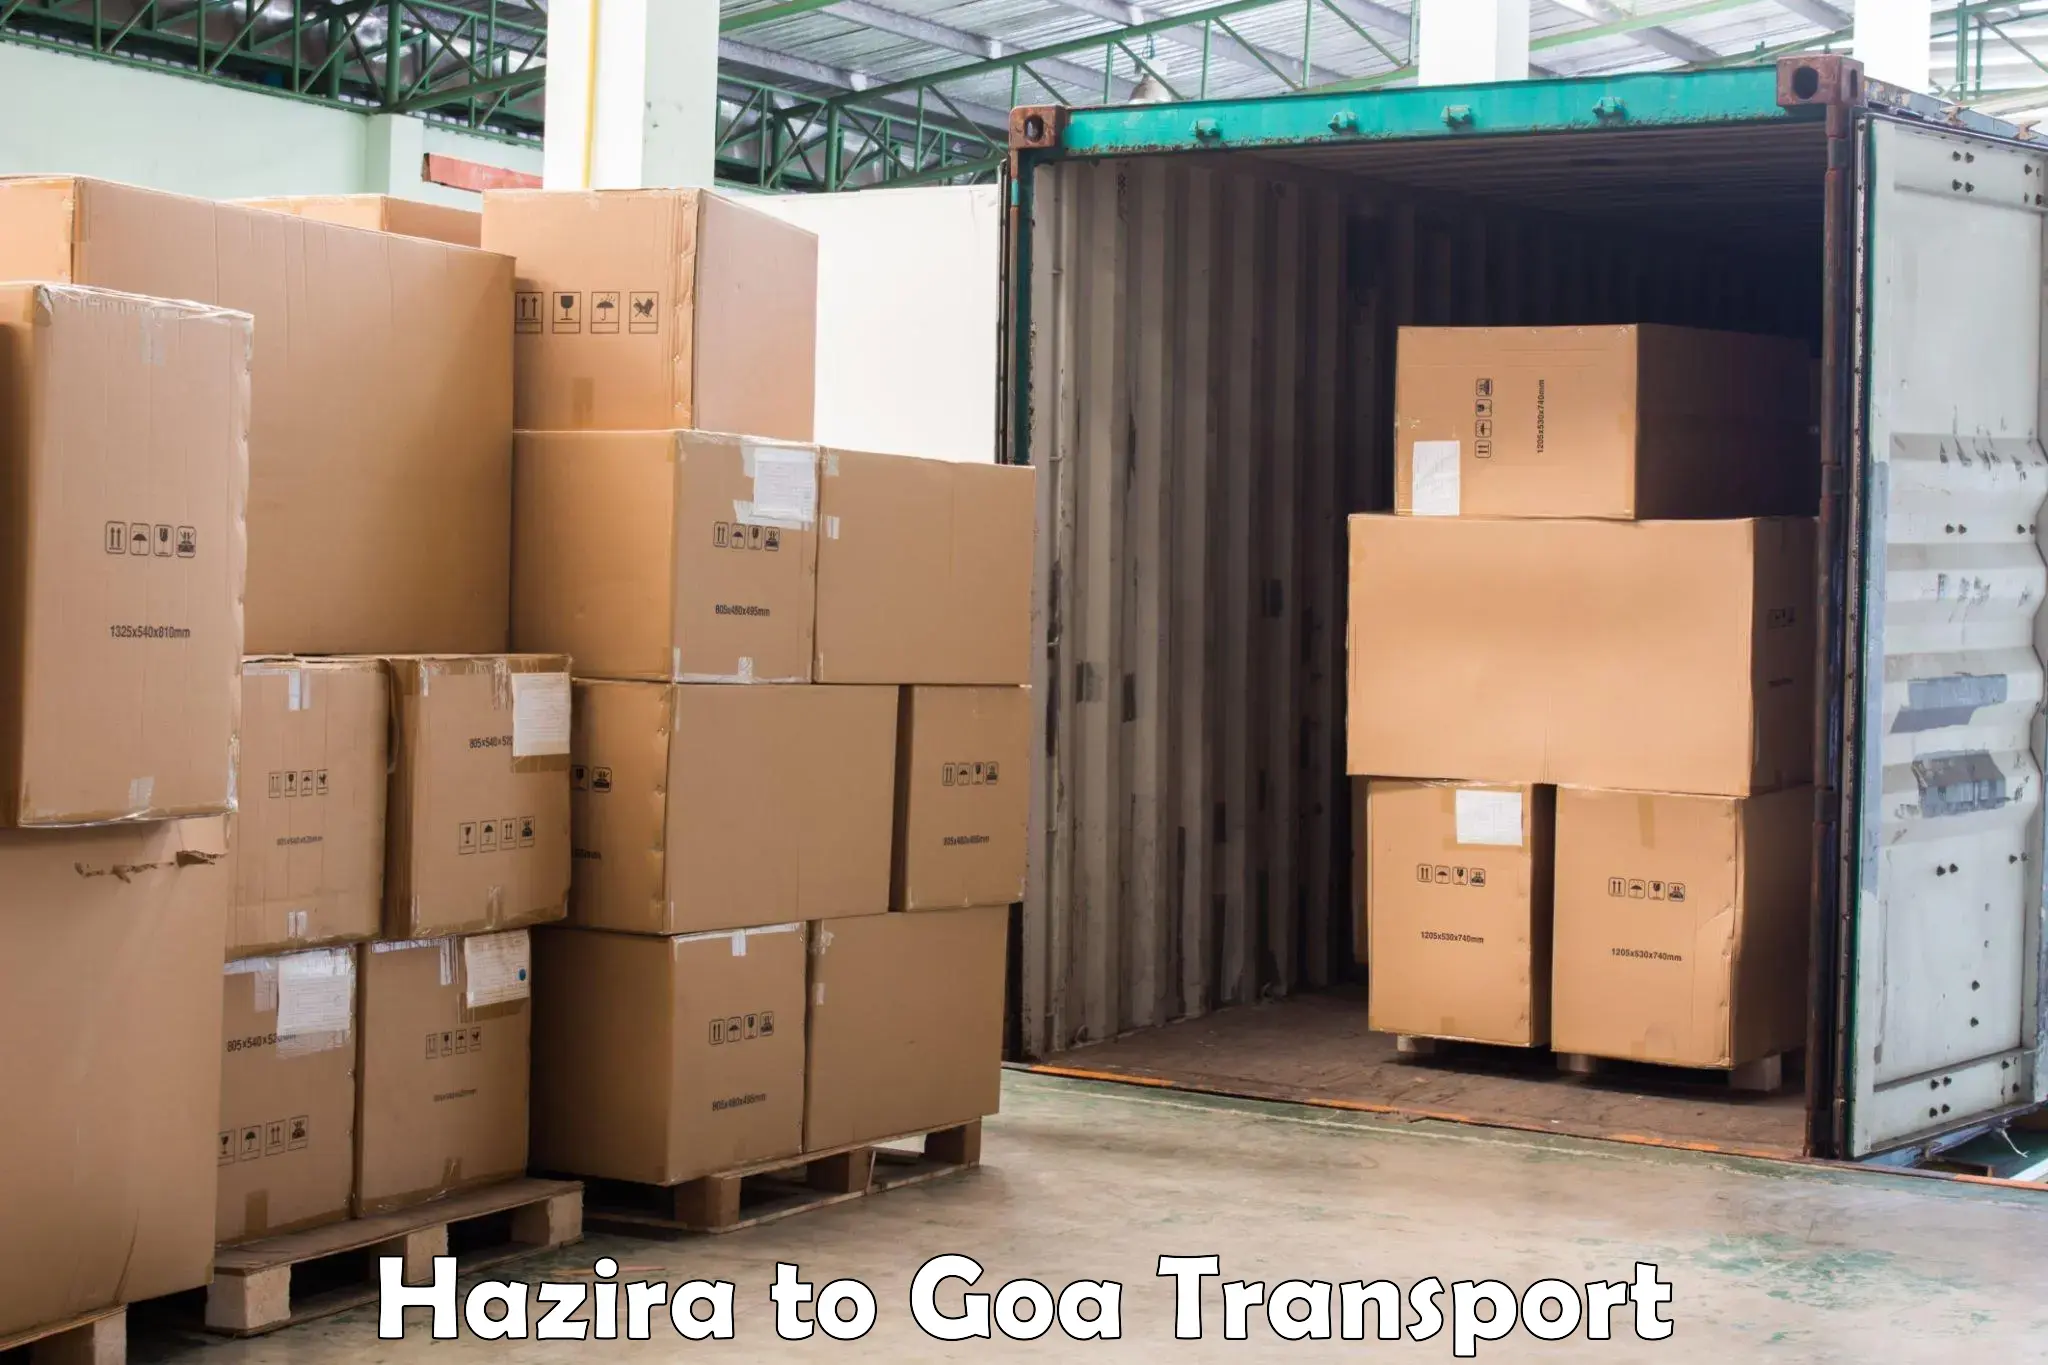 Express transport services Hazira to Mormugao Port